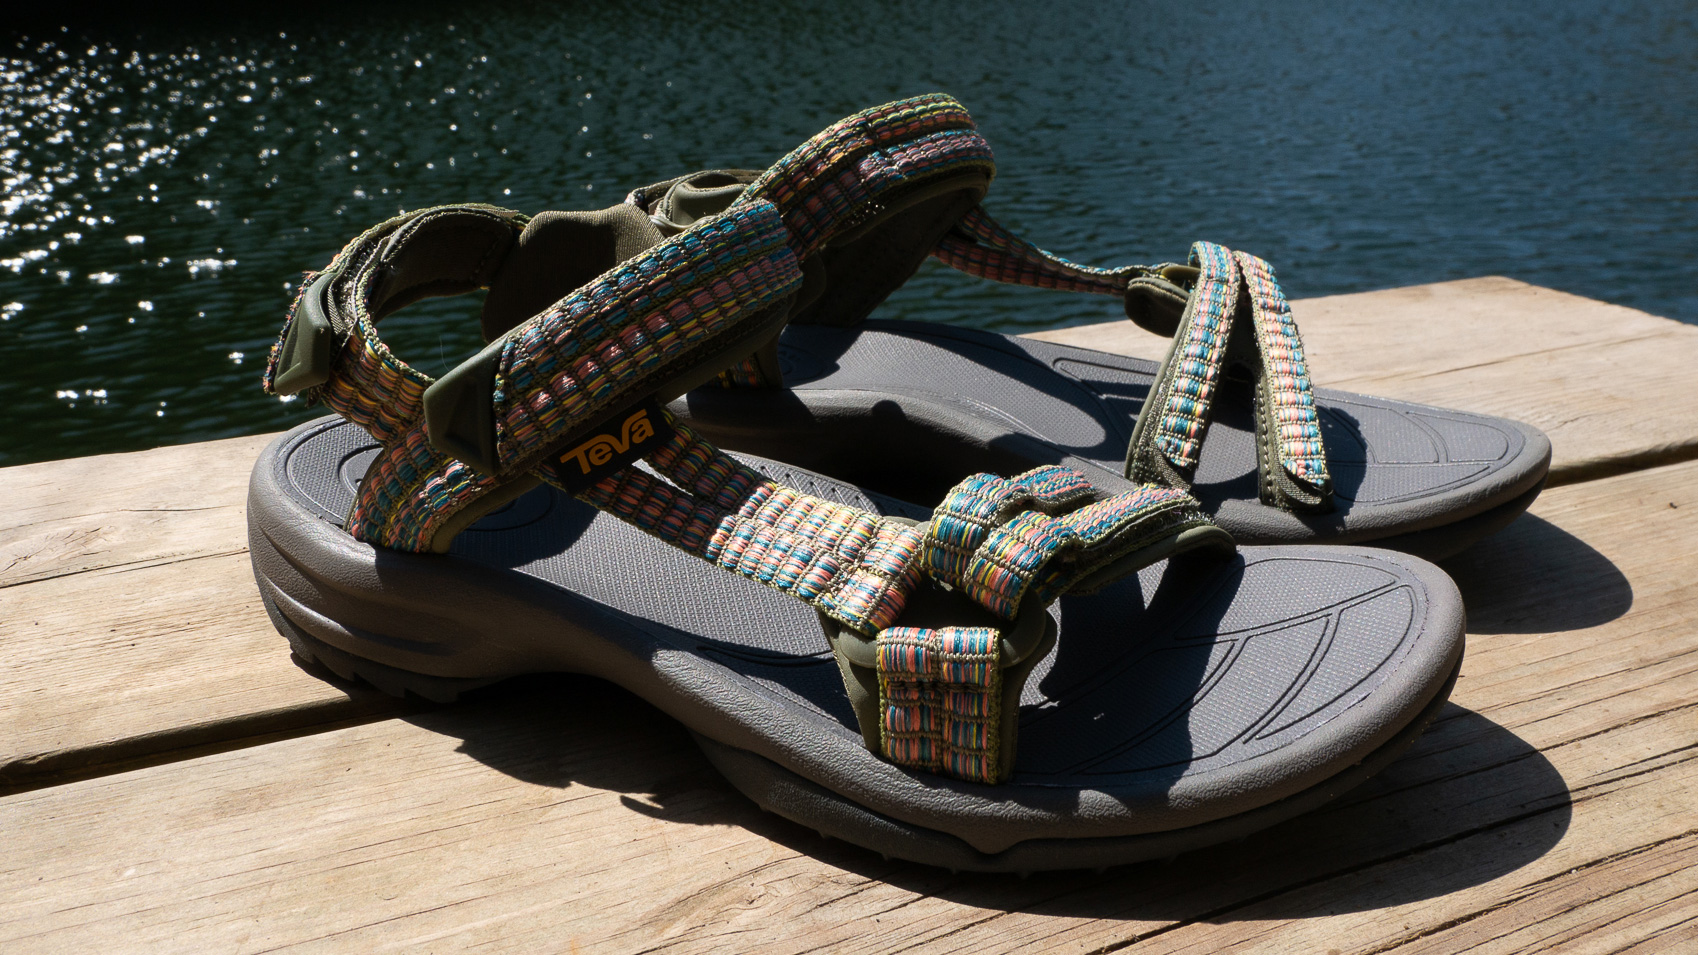 Teva Terra Lite sandal review: comfortable and | T3